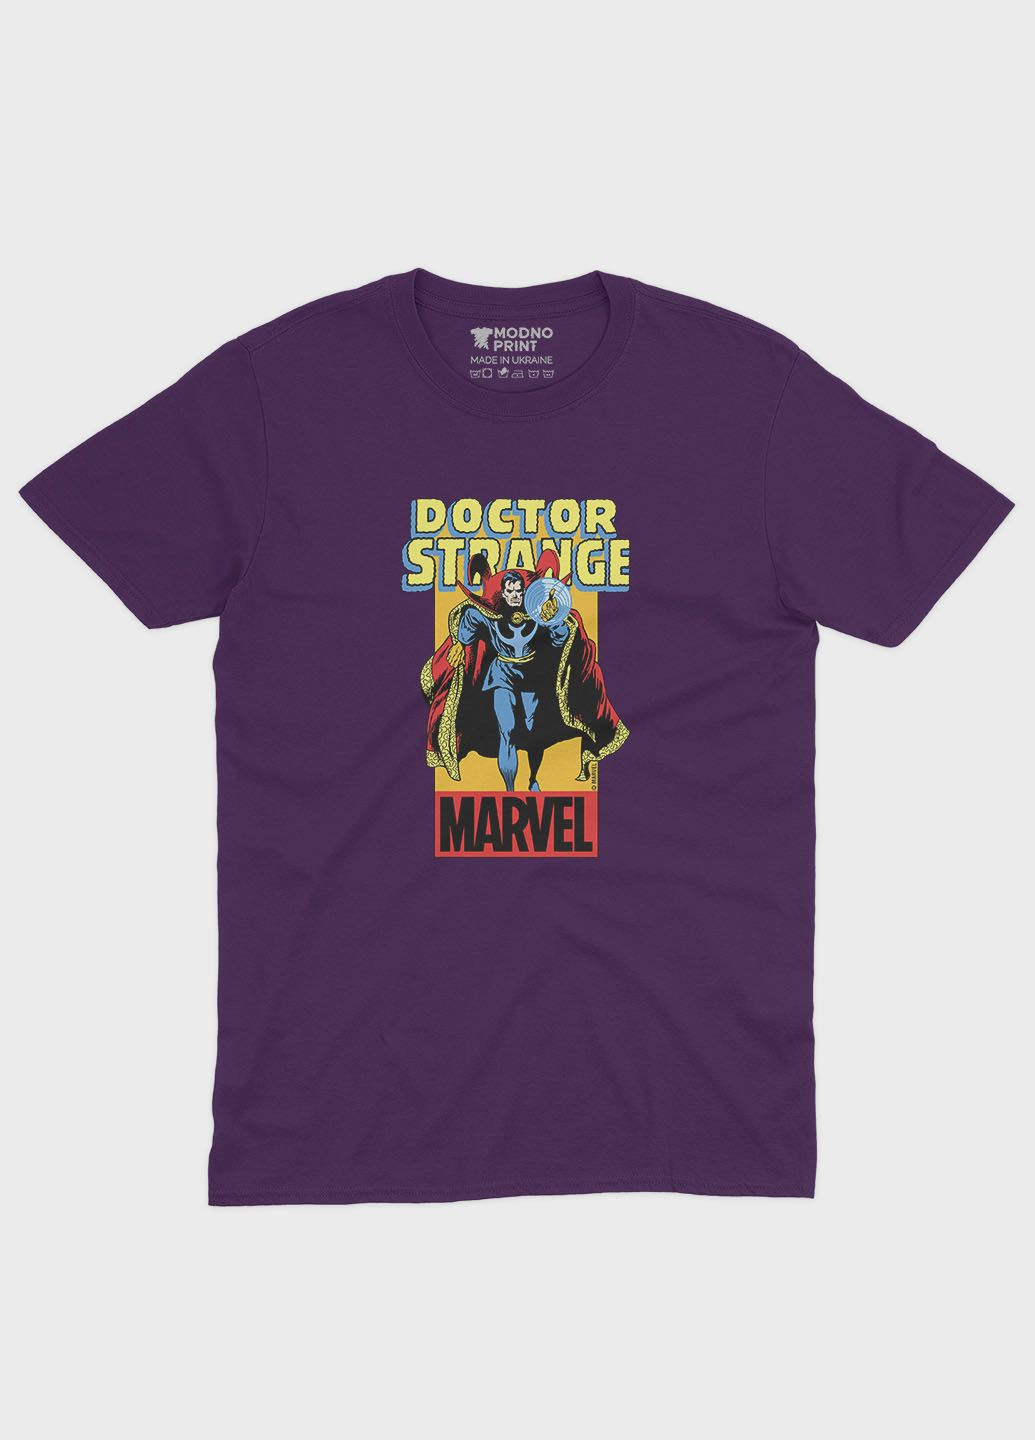 Фиолетовая демисезонная футболка для мальчика с принтом супергероя - доктор стрэндж (ts001-1-dby-006-020-003-b) Modno